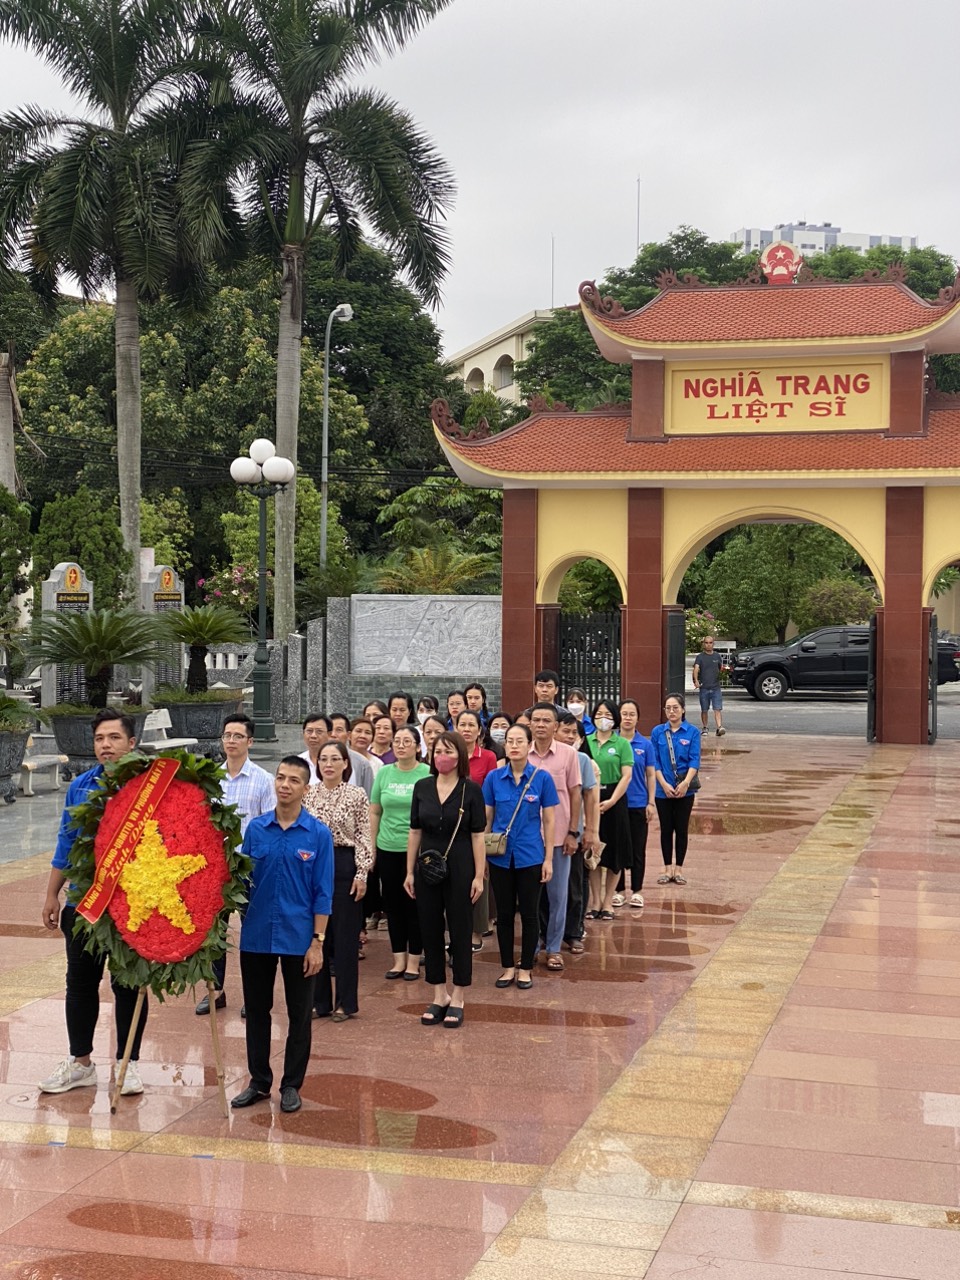 UBND phường Máy Tơ kết hợp với các tổ chức chính trị - xã hội phường và các trường học trên địa bàn tổ chức lễ dâng hương và dọn dẹp tại nghĩa trang Liệt sĩ Quận Ngô Quyền.